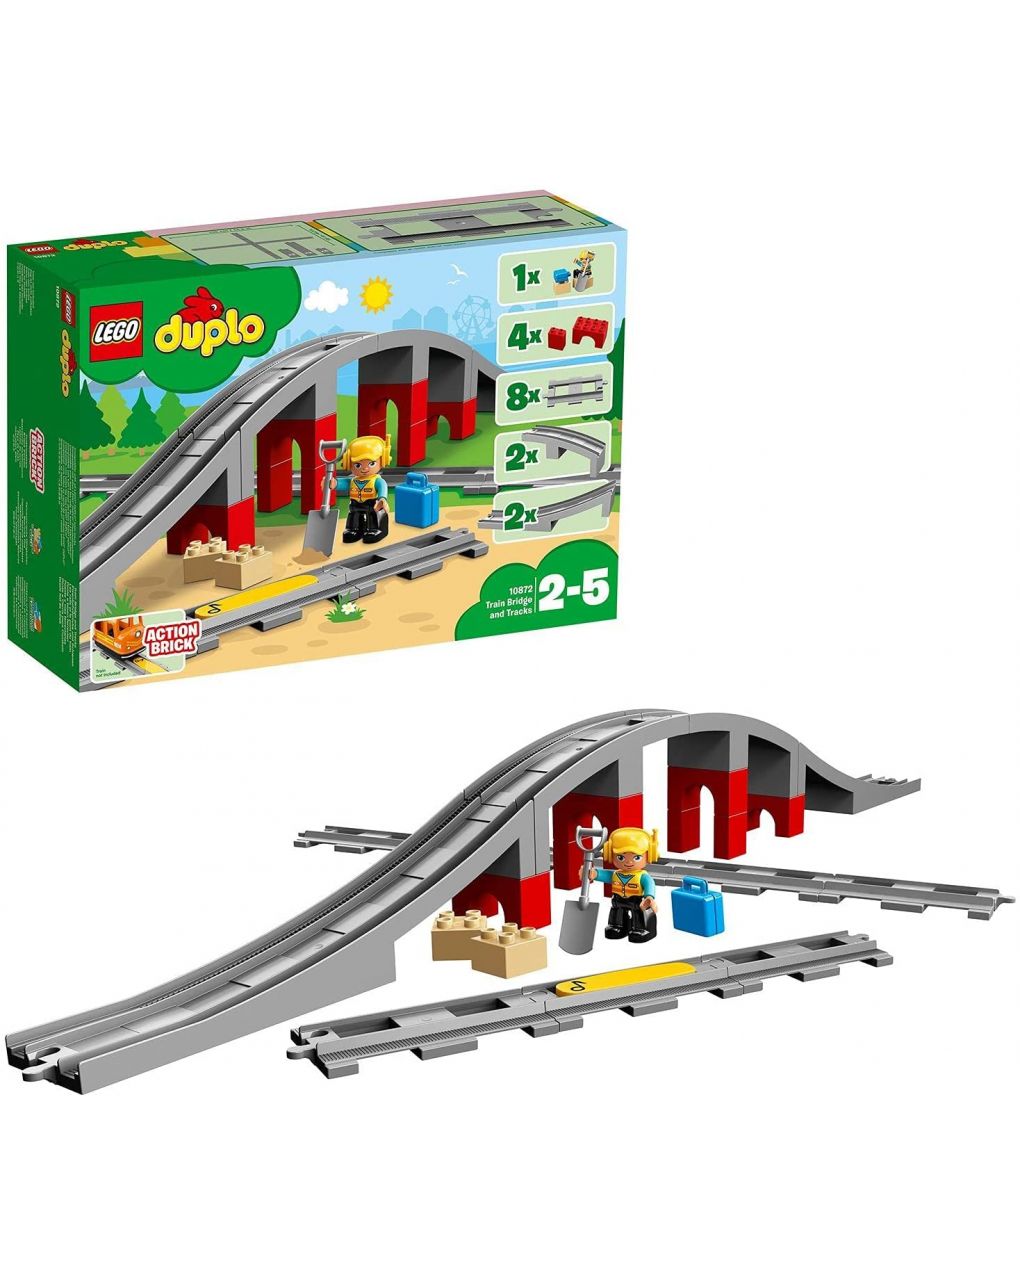 Ponte e trilhos de trem de lego duplo - 10872 - LEGO Duplo